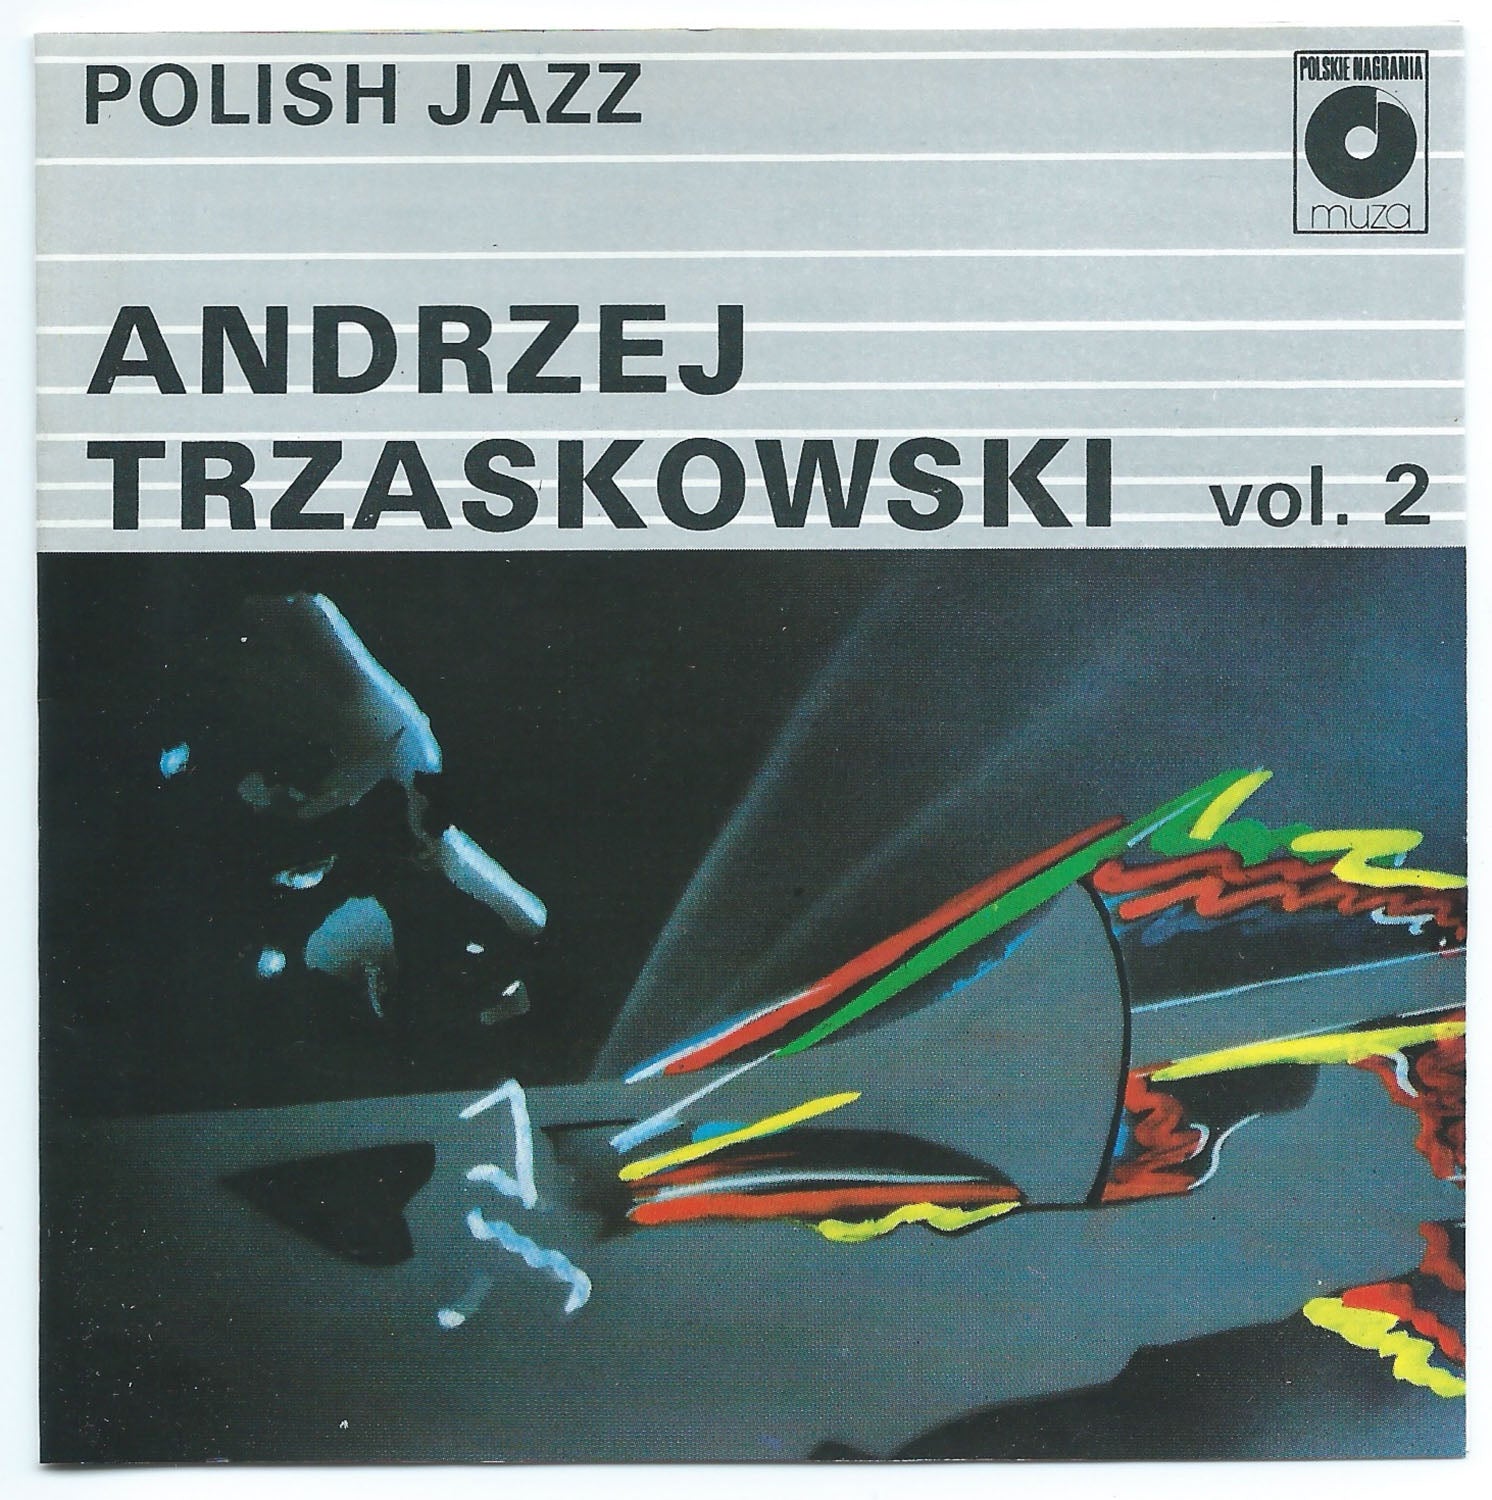 Polish Jazz vol 2 - Andrzej Trzaskowski